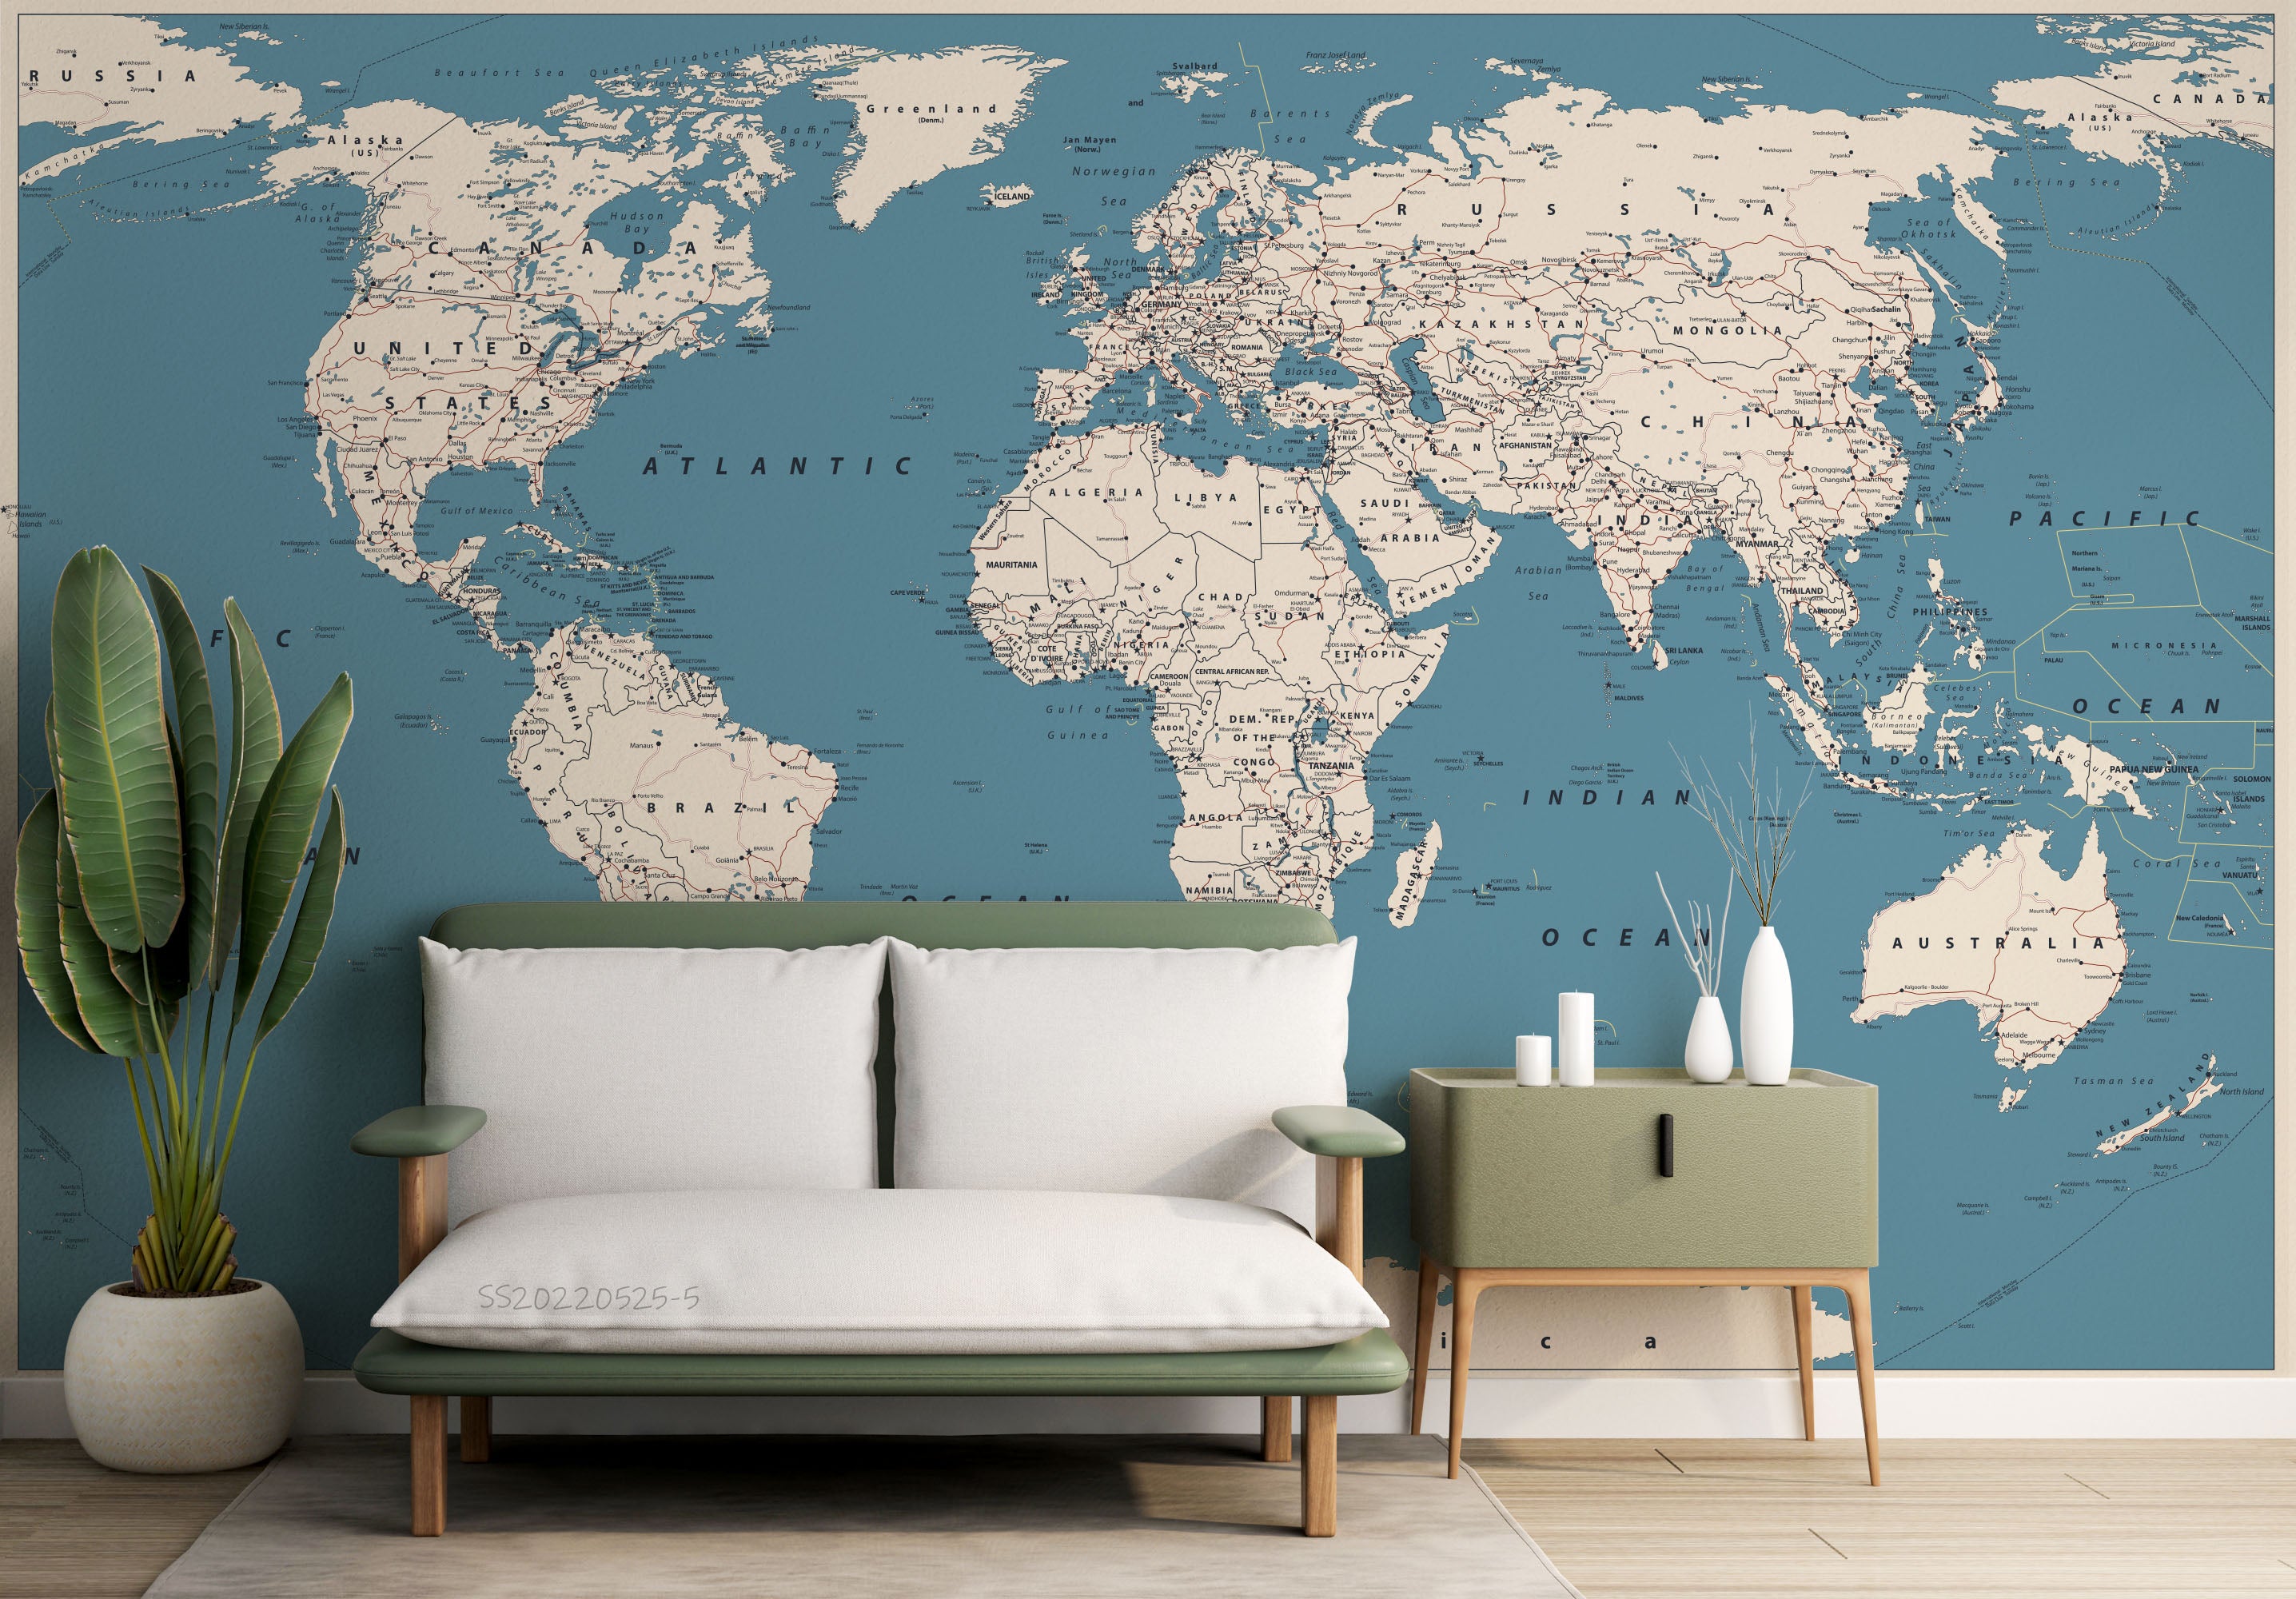 3D Detailed World Map Wall Mural Wallpaper GD 948- Jess Art Decoration